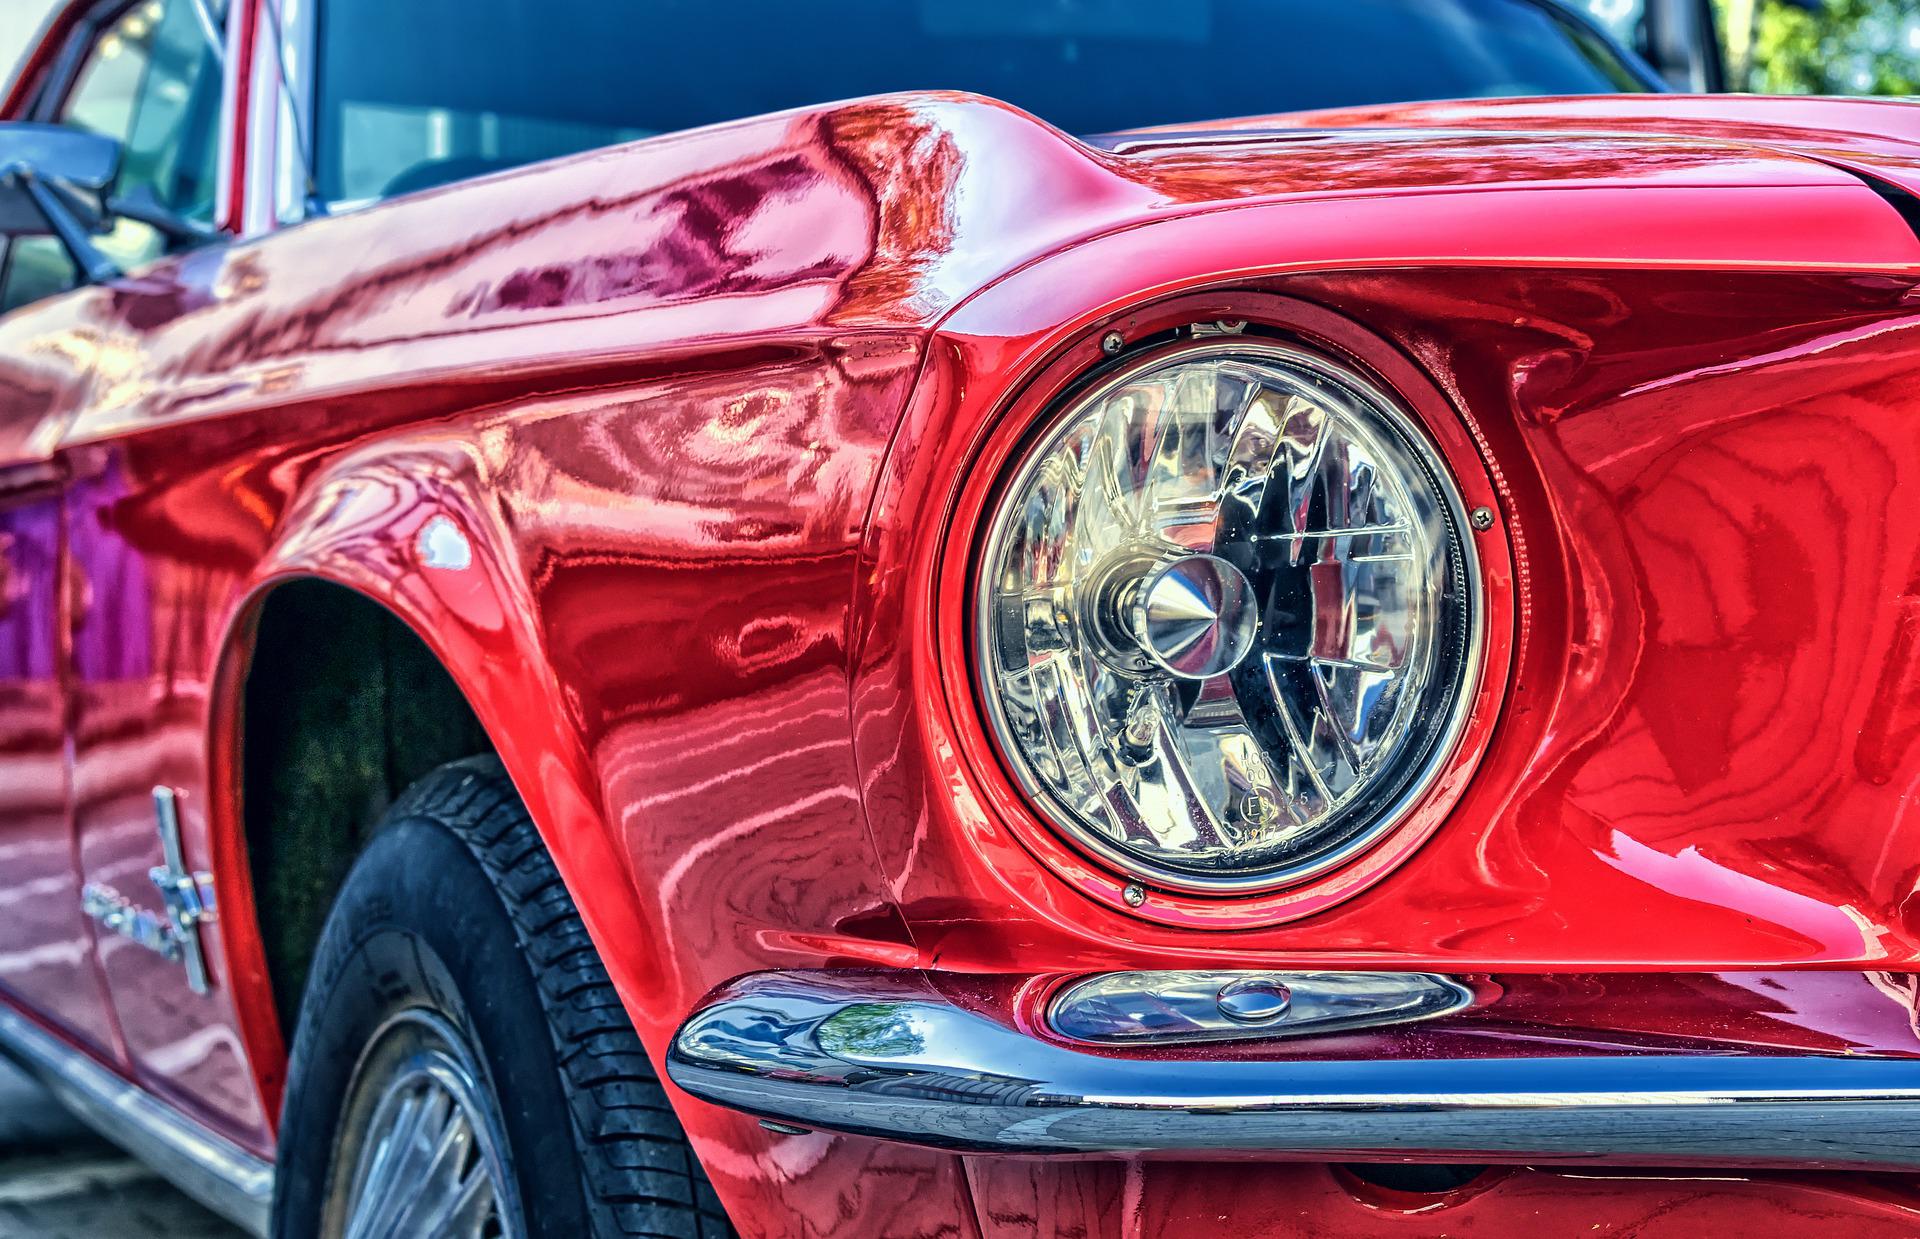 usuwanie wgnieceń w karoserii Ford Mustang czerwony